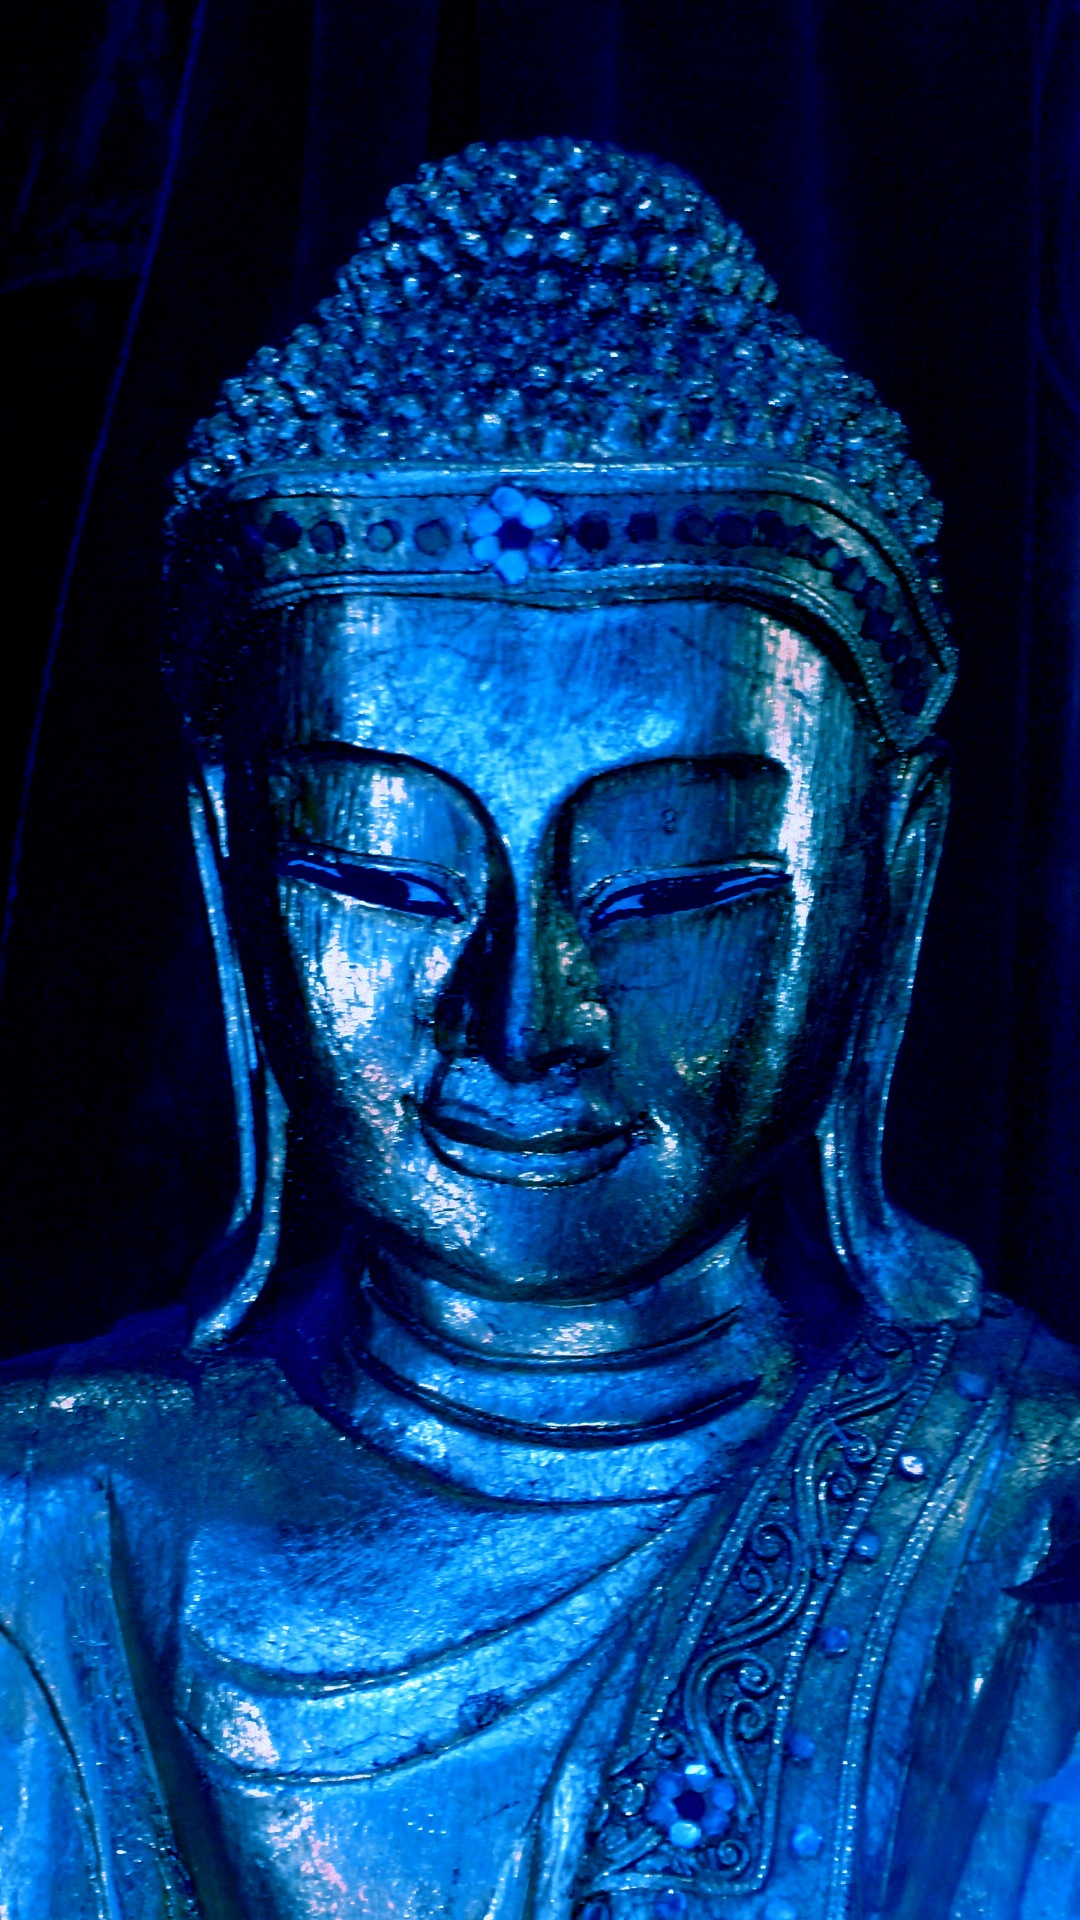 blue buddha statuette free photo